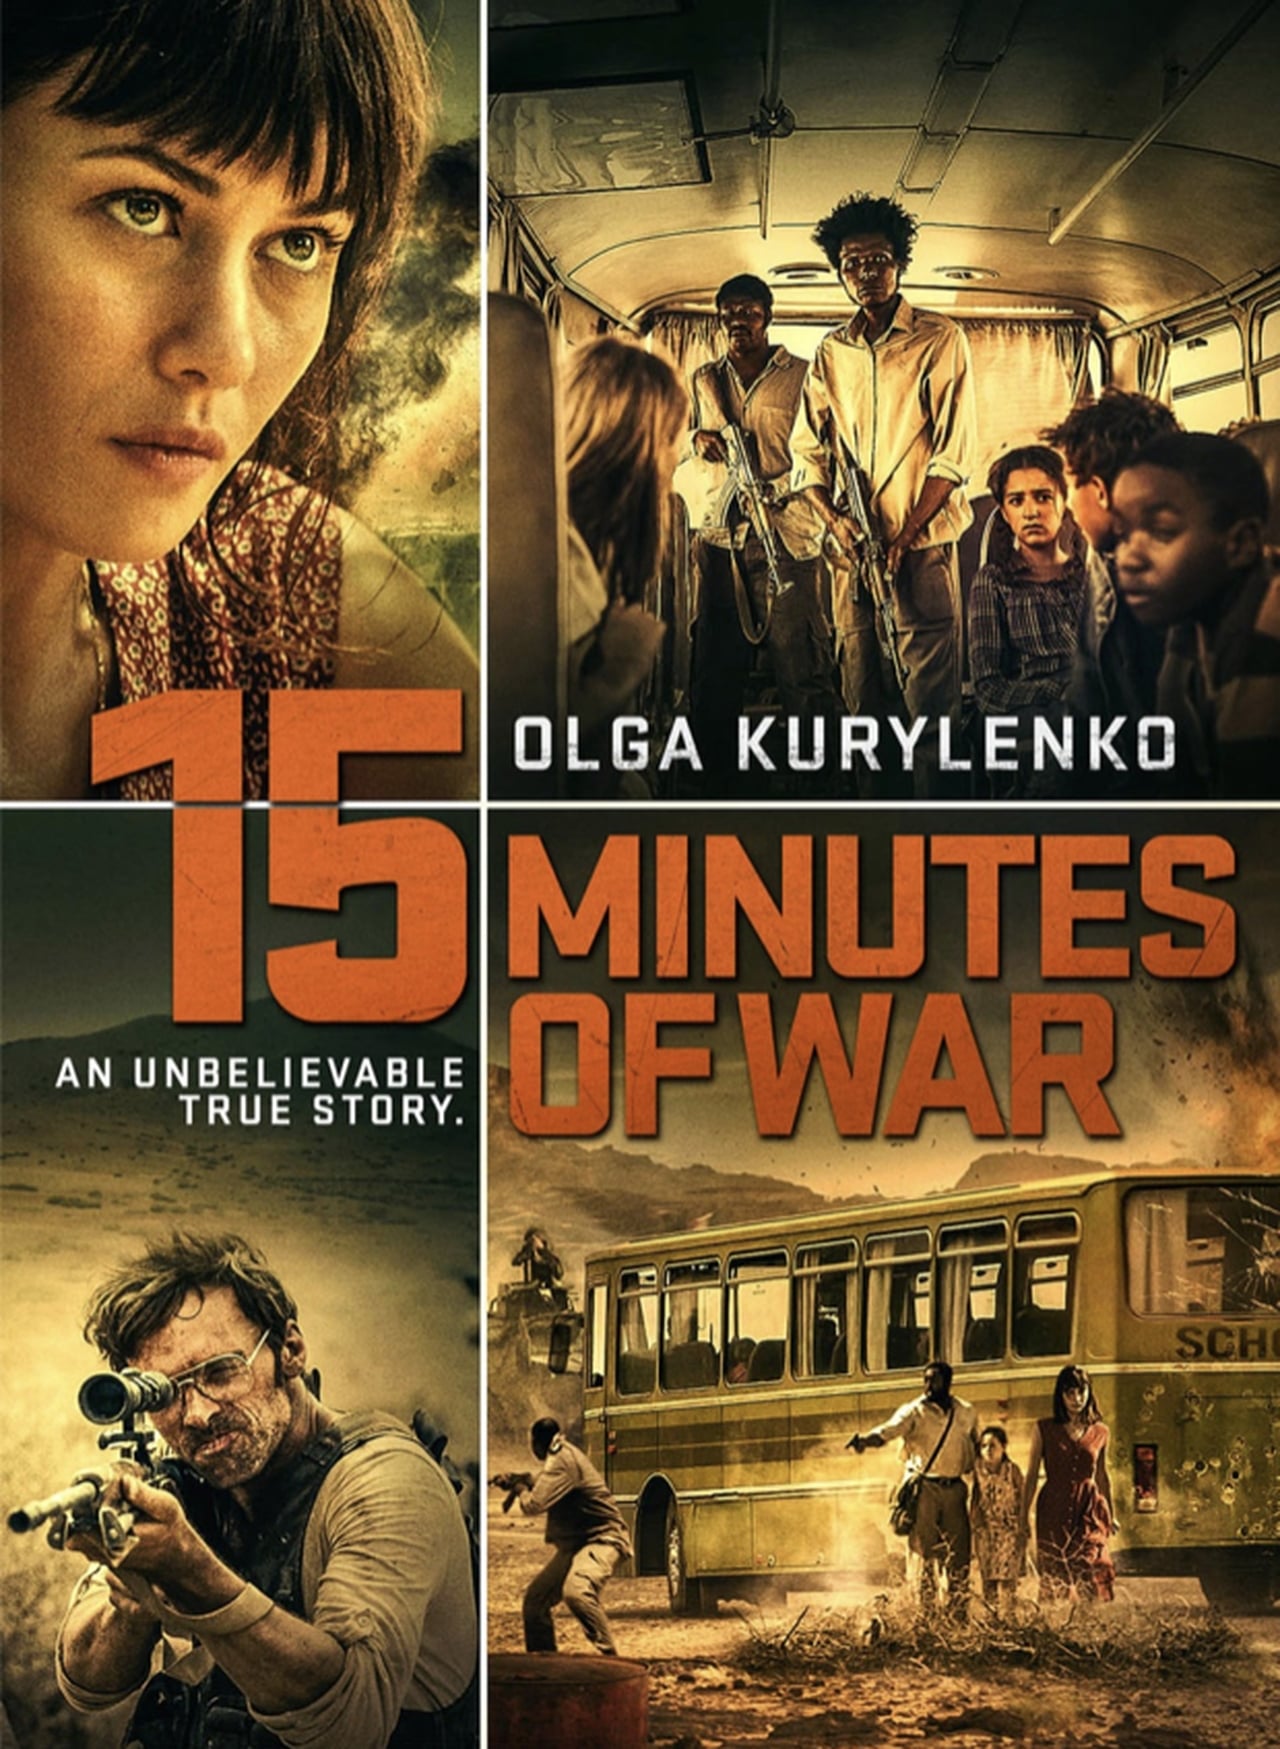 15 Minutes of War (2019) 192Kbps 24Fps 48Khz 2.0Ch DigitalTV Turkish Audio TAC